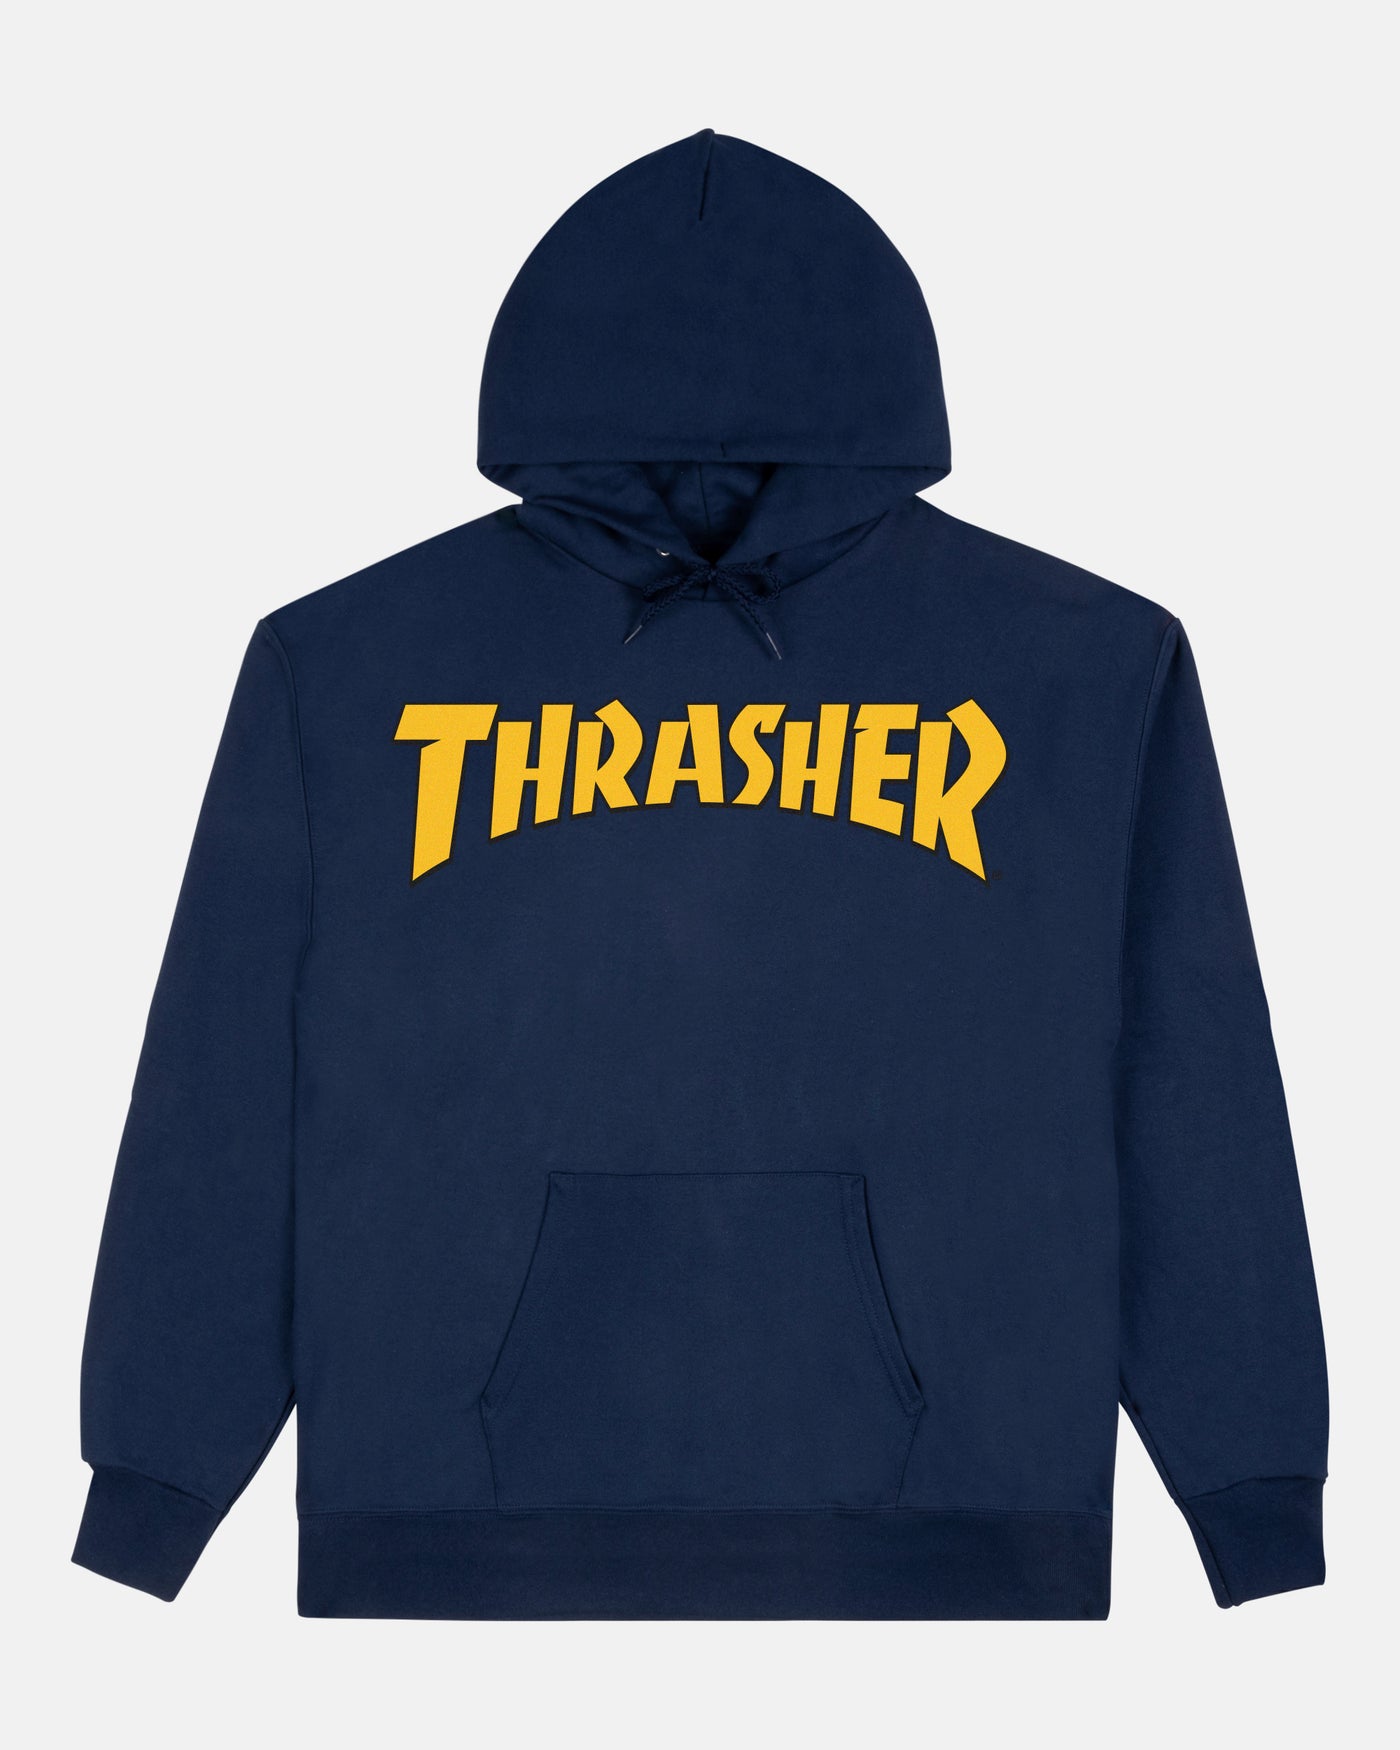 Thrasher - Poleron Canguro Cover Logo Navy - Lo Mejor De Thrasher - Solo Por $59990! Compra Ahora En Wallride Skateshop